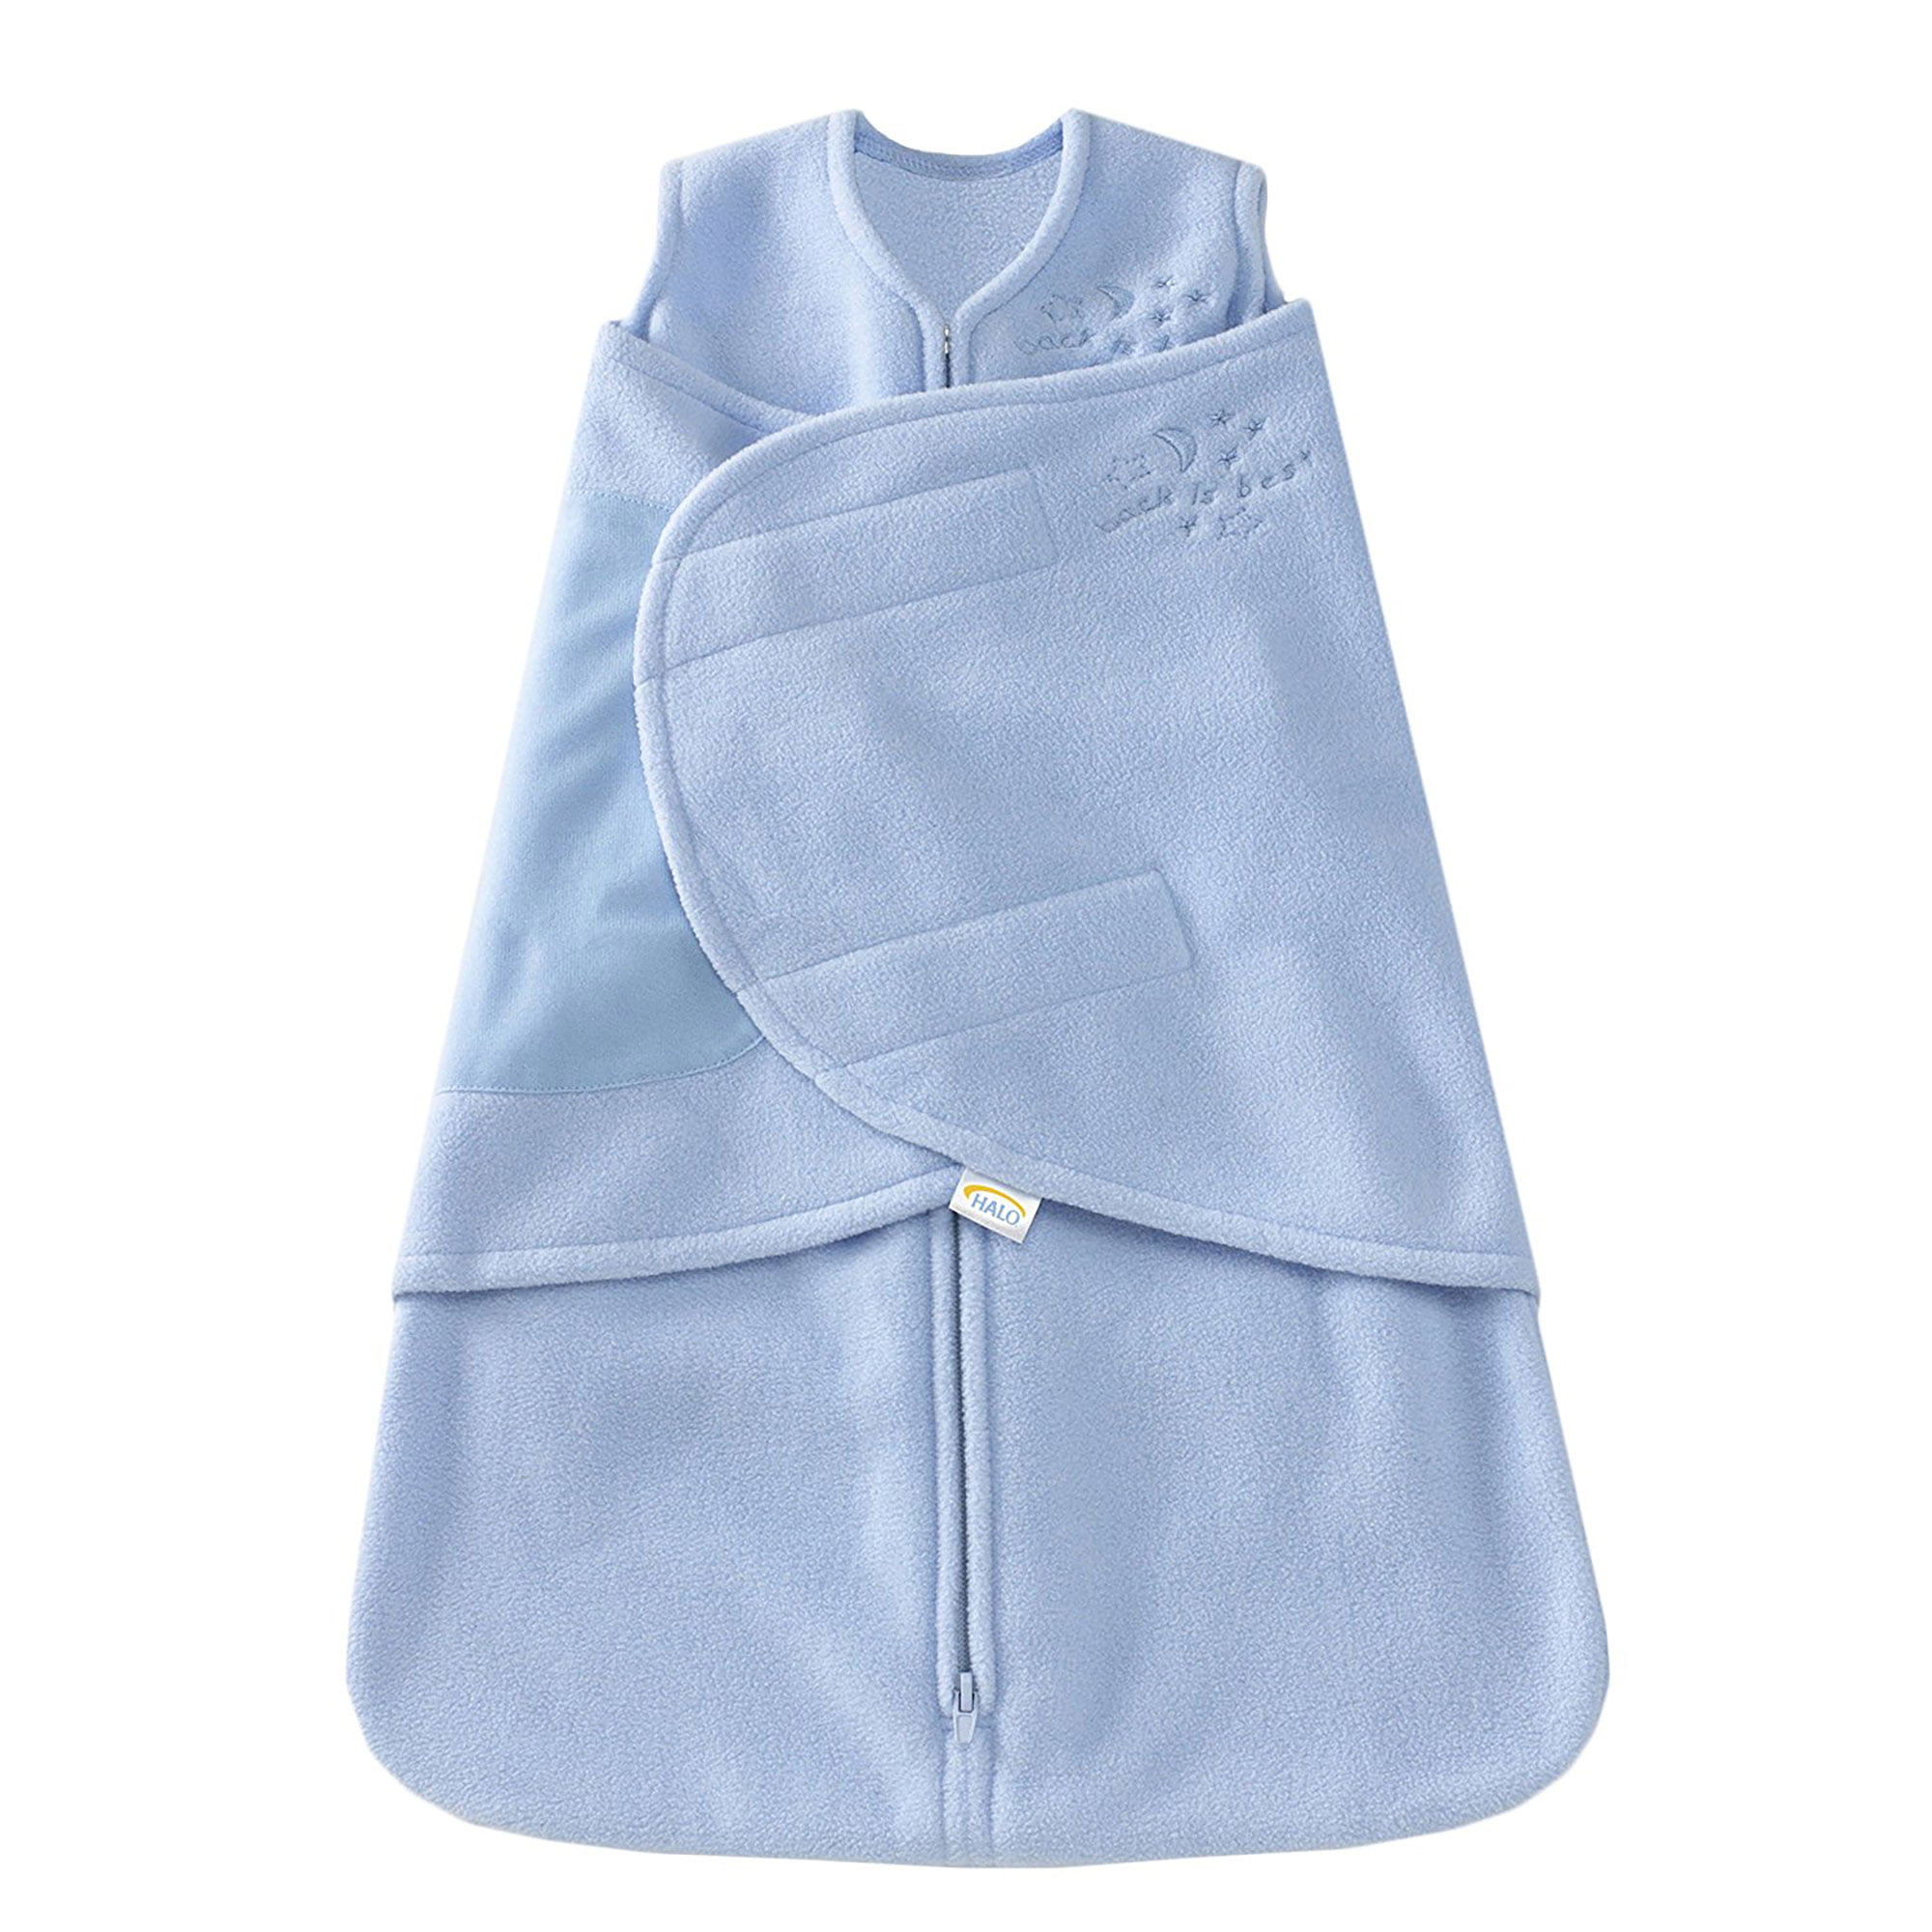 HALO SleepSack Swaddle Wearable Blanket, Fleece, Blue, Small - Walmart.com